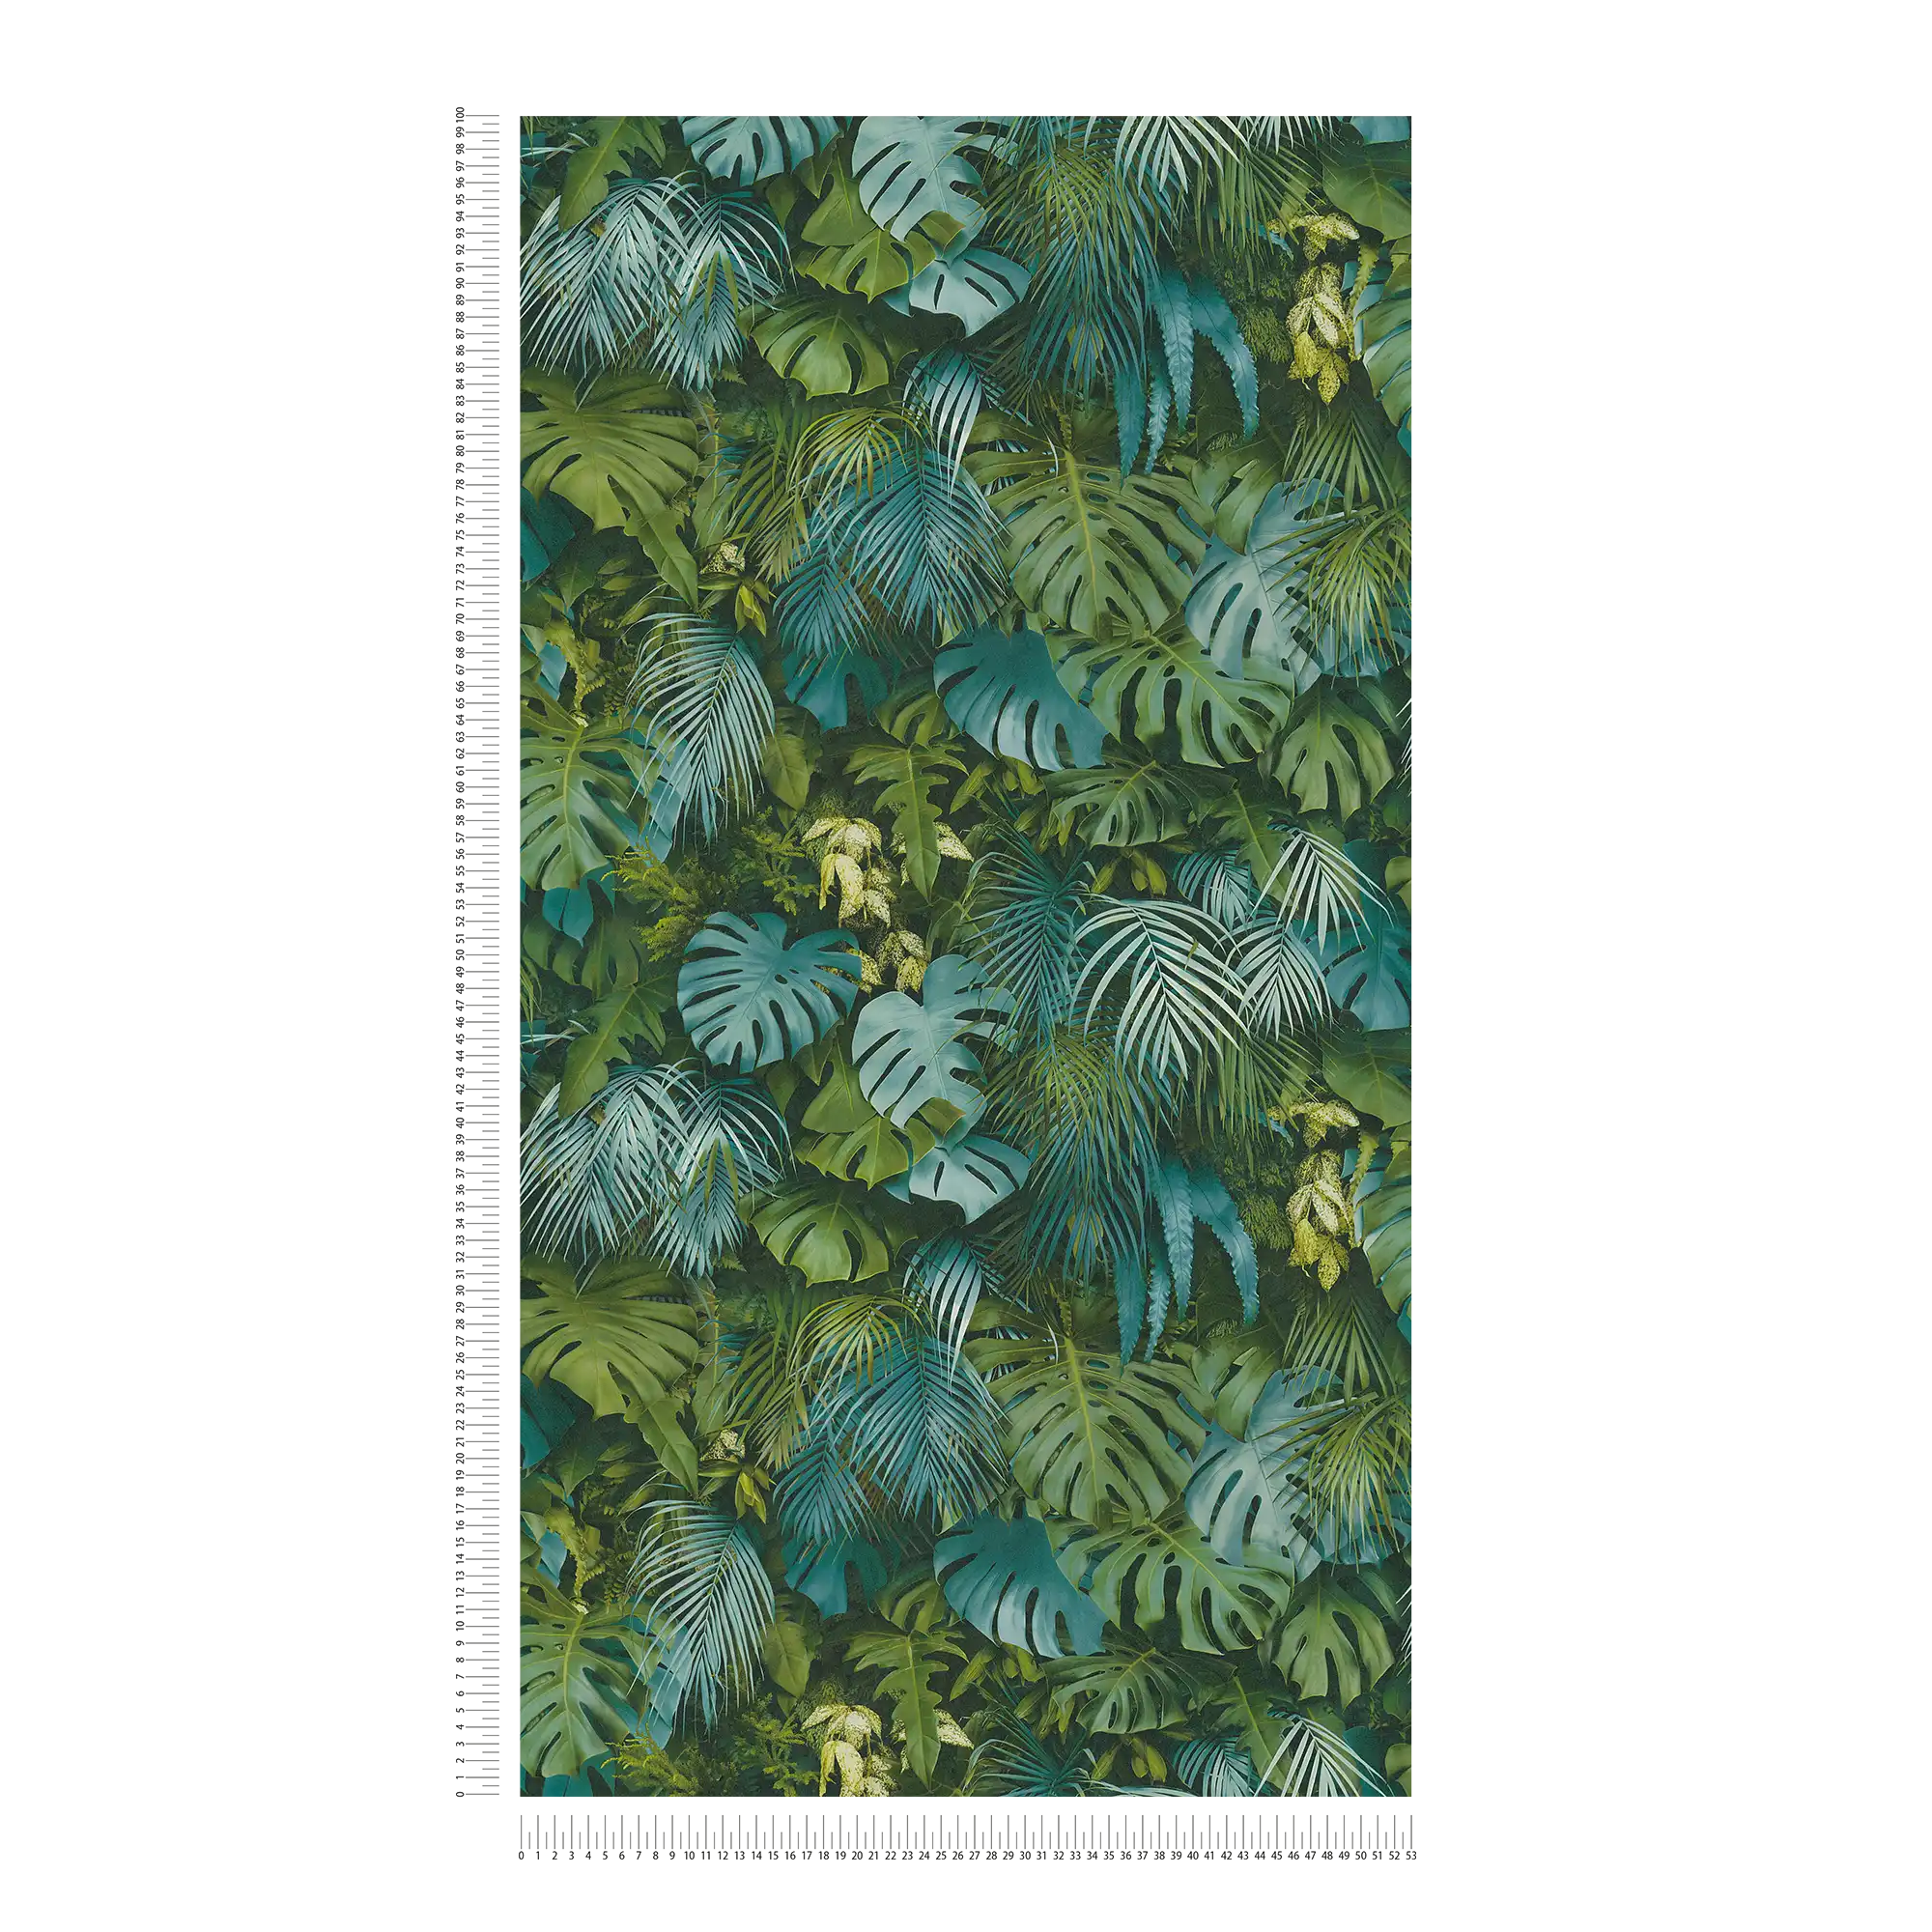             Papier peint Forêt de feuilles vertes, réaliste, accents de couleur - vert, bleu
        